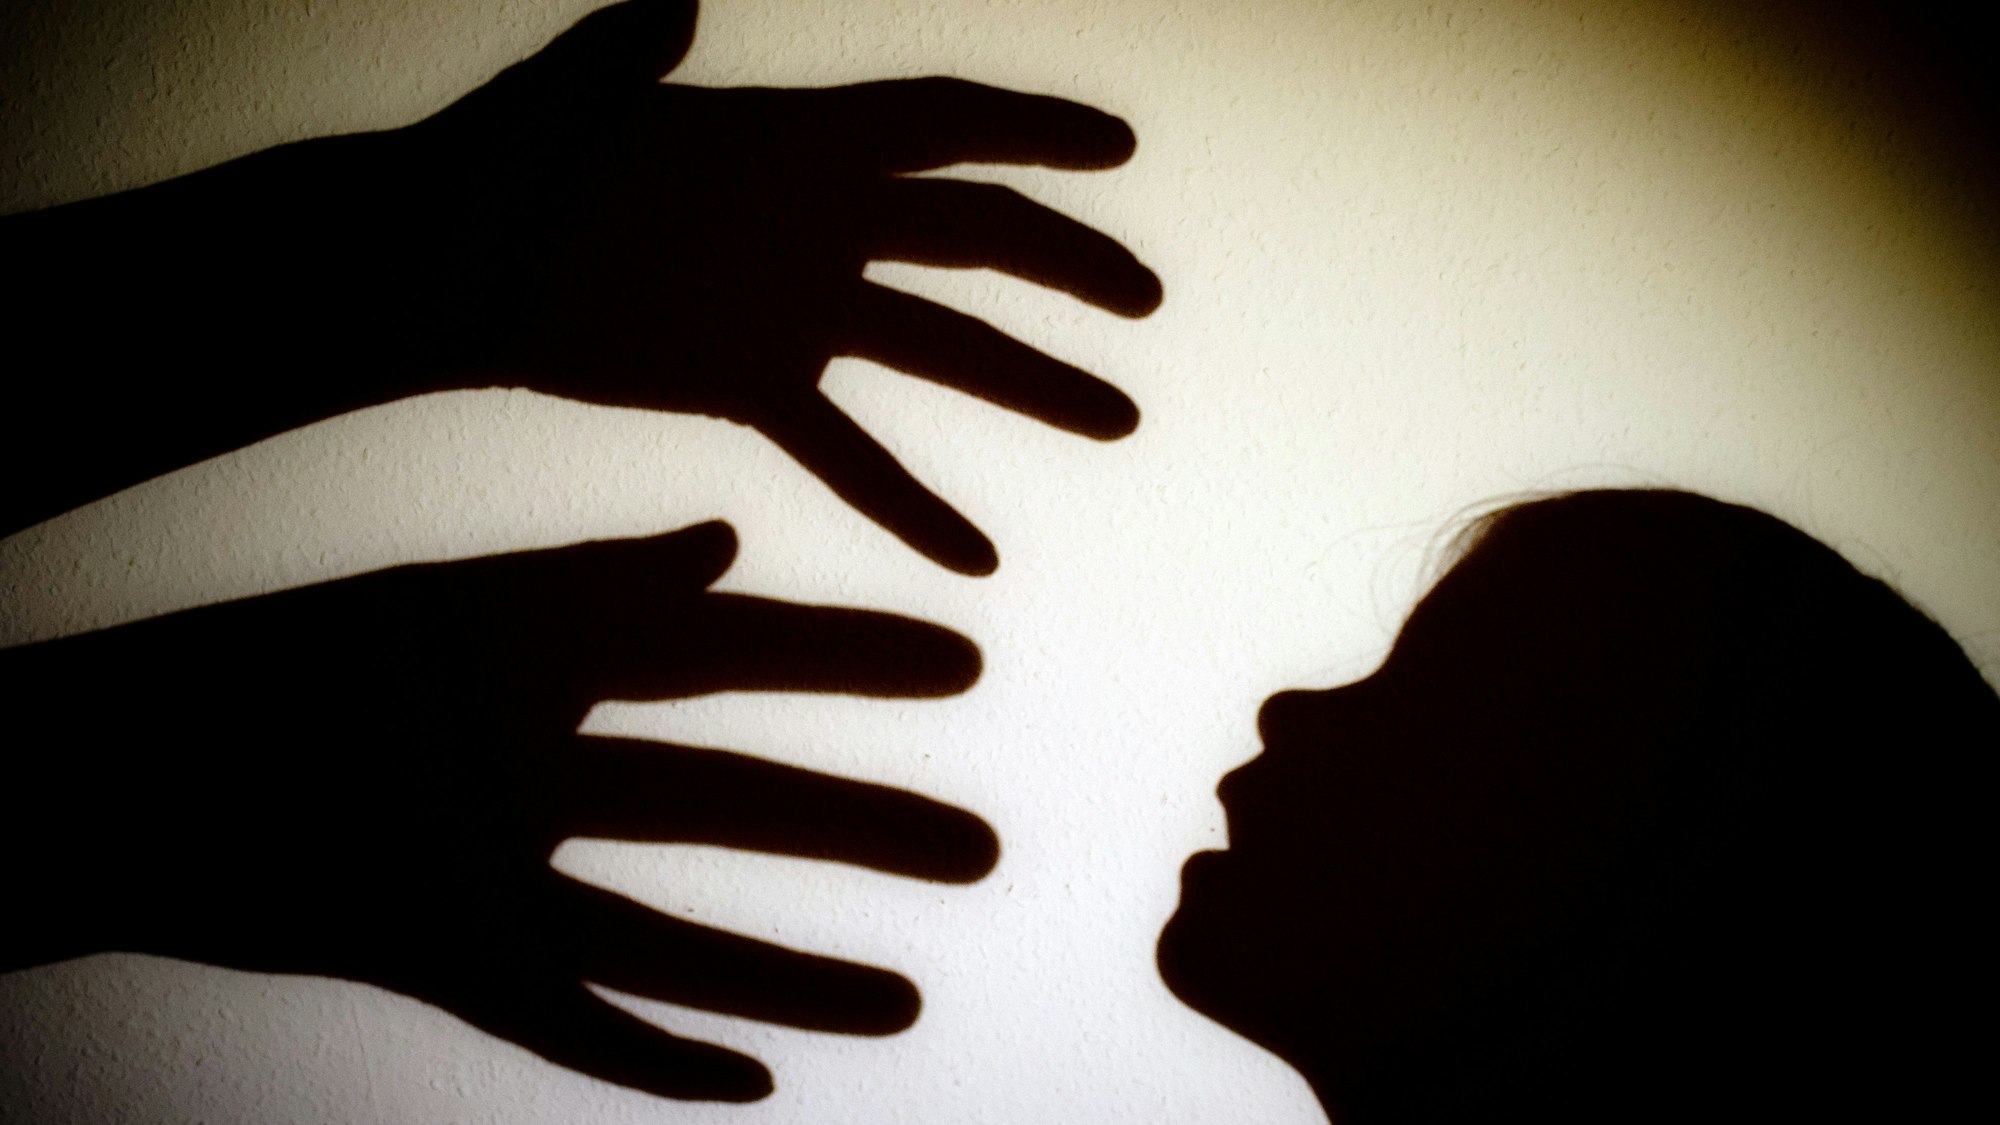 Schatten von Händen einer erwachsenen Person und dem Kopf eines Kindes an einer Wand eines Zimmers.